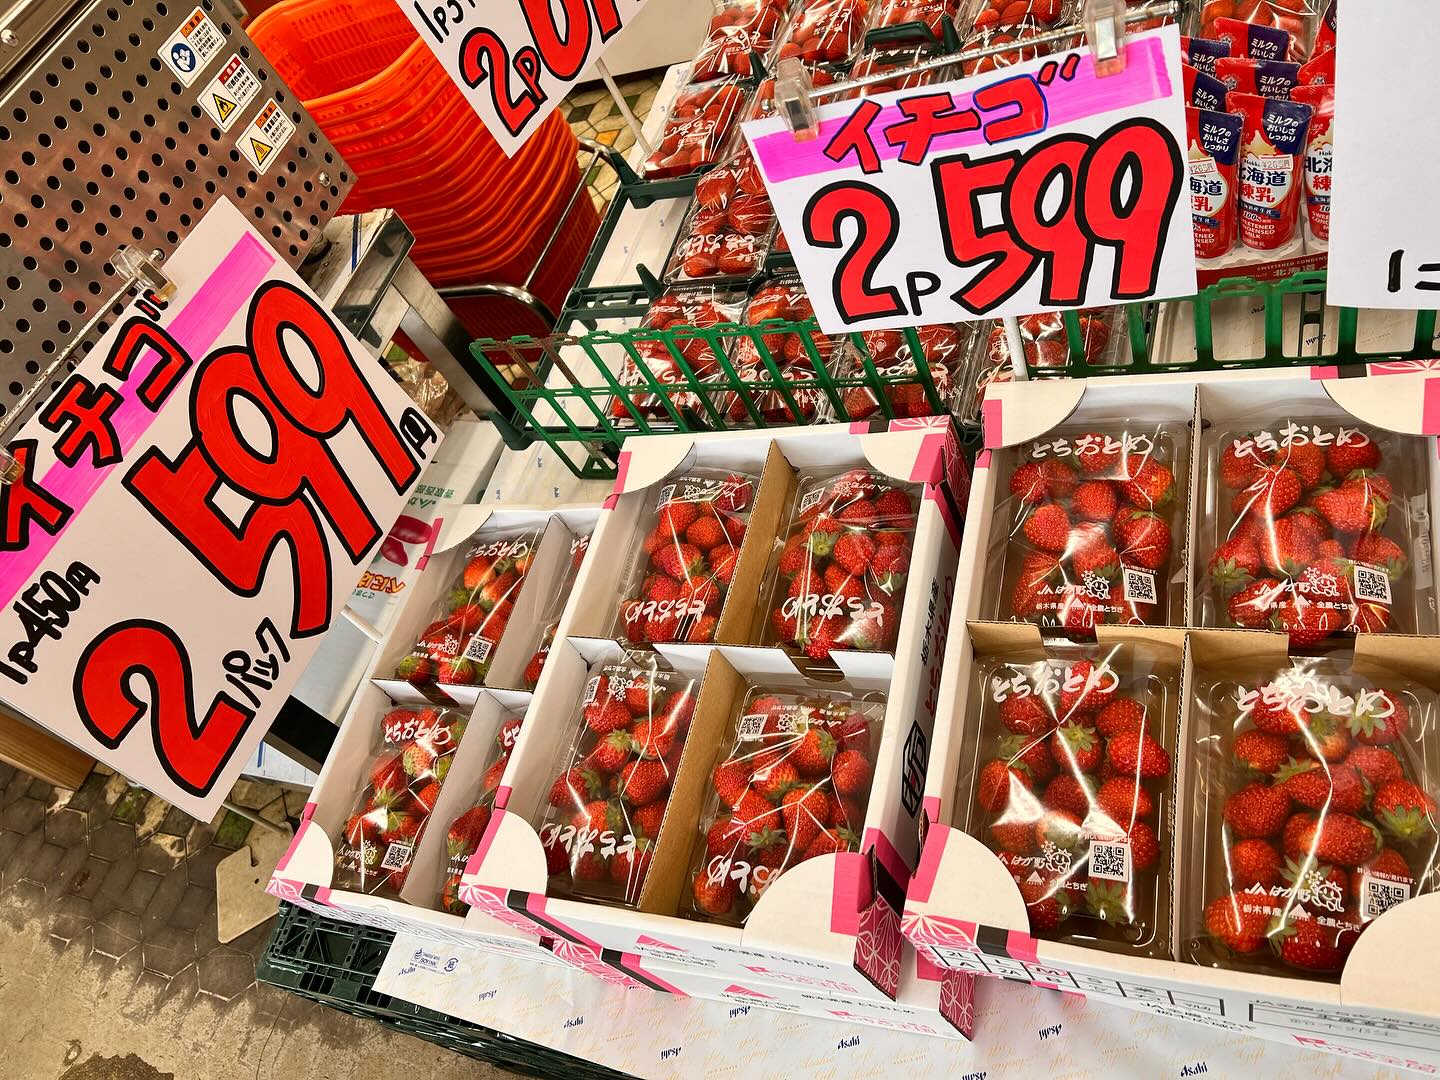 イチゴ2パック599円と2パック699円
台湾バナナにフルーツサンド、チョコバナナ
セロリもお手頃価格ですね。